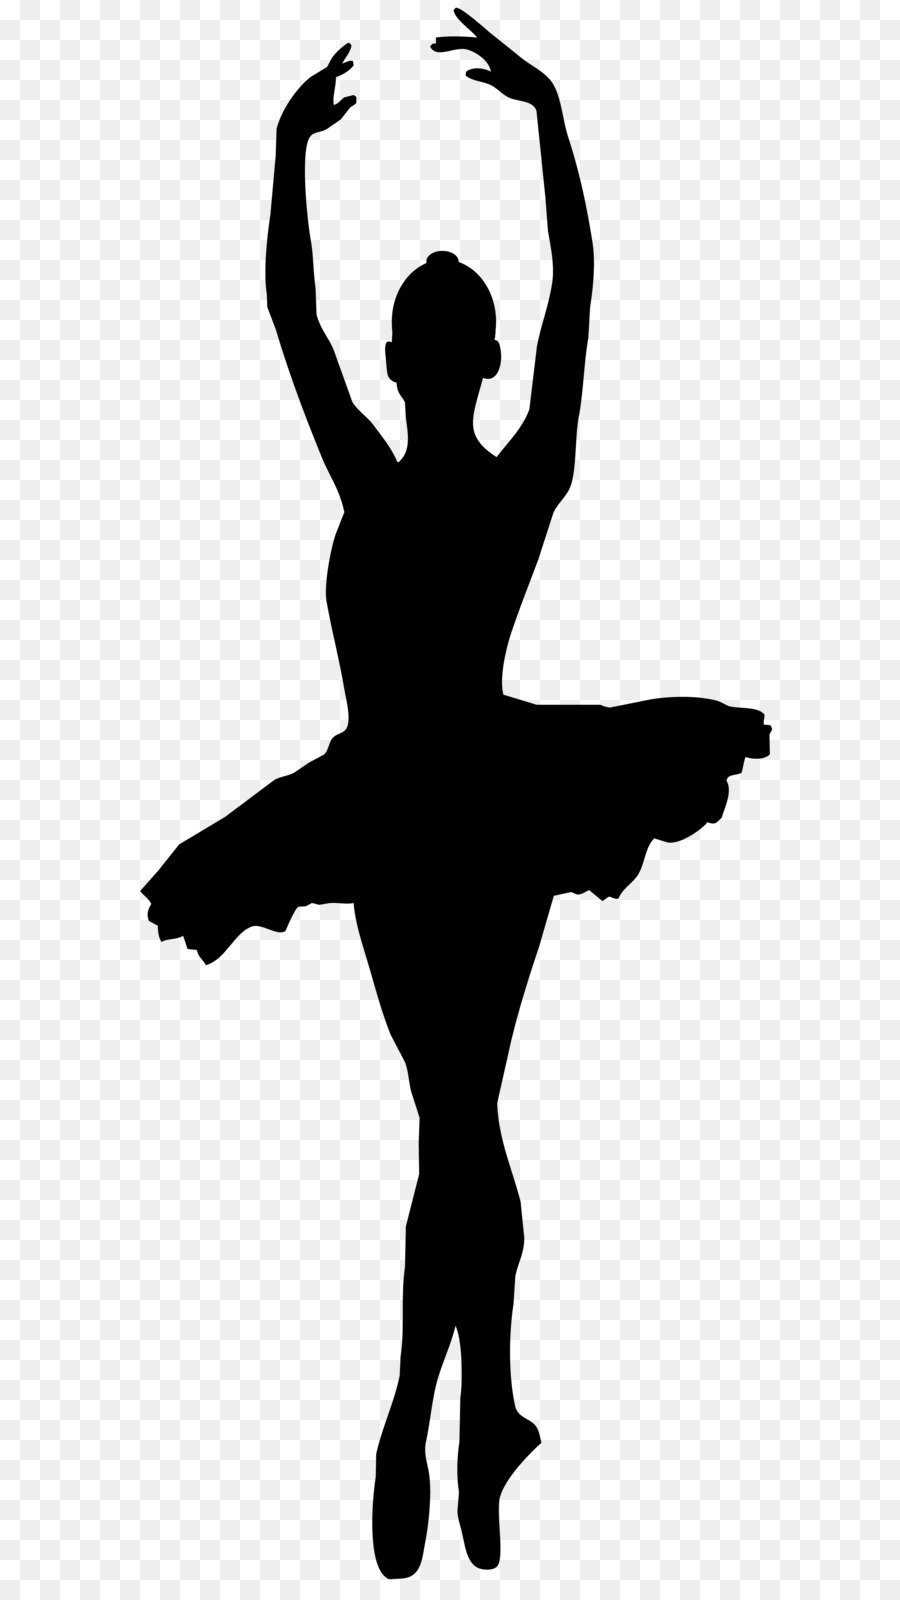 Bailarina De Ballet Silueta Vectores, Iconos, Gráficos y Fondos para  Descargar Gratis